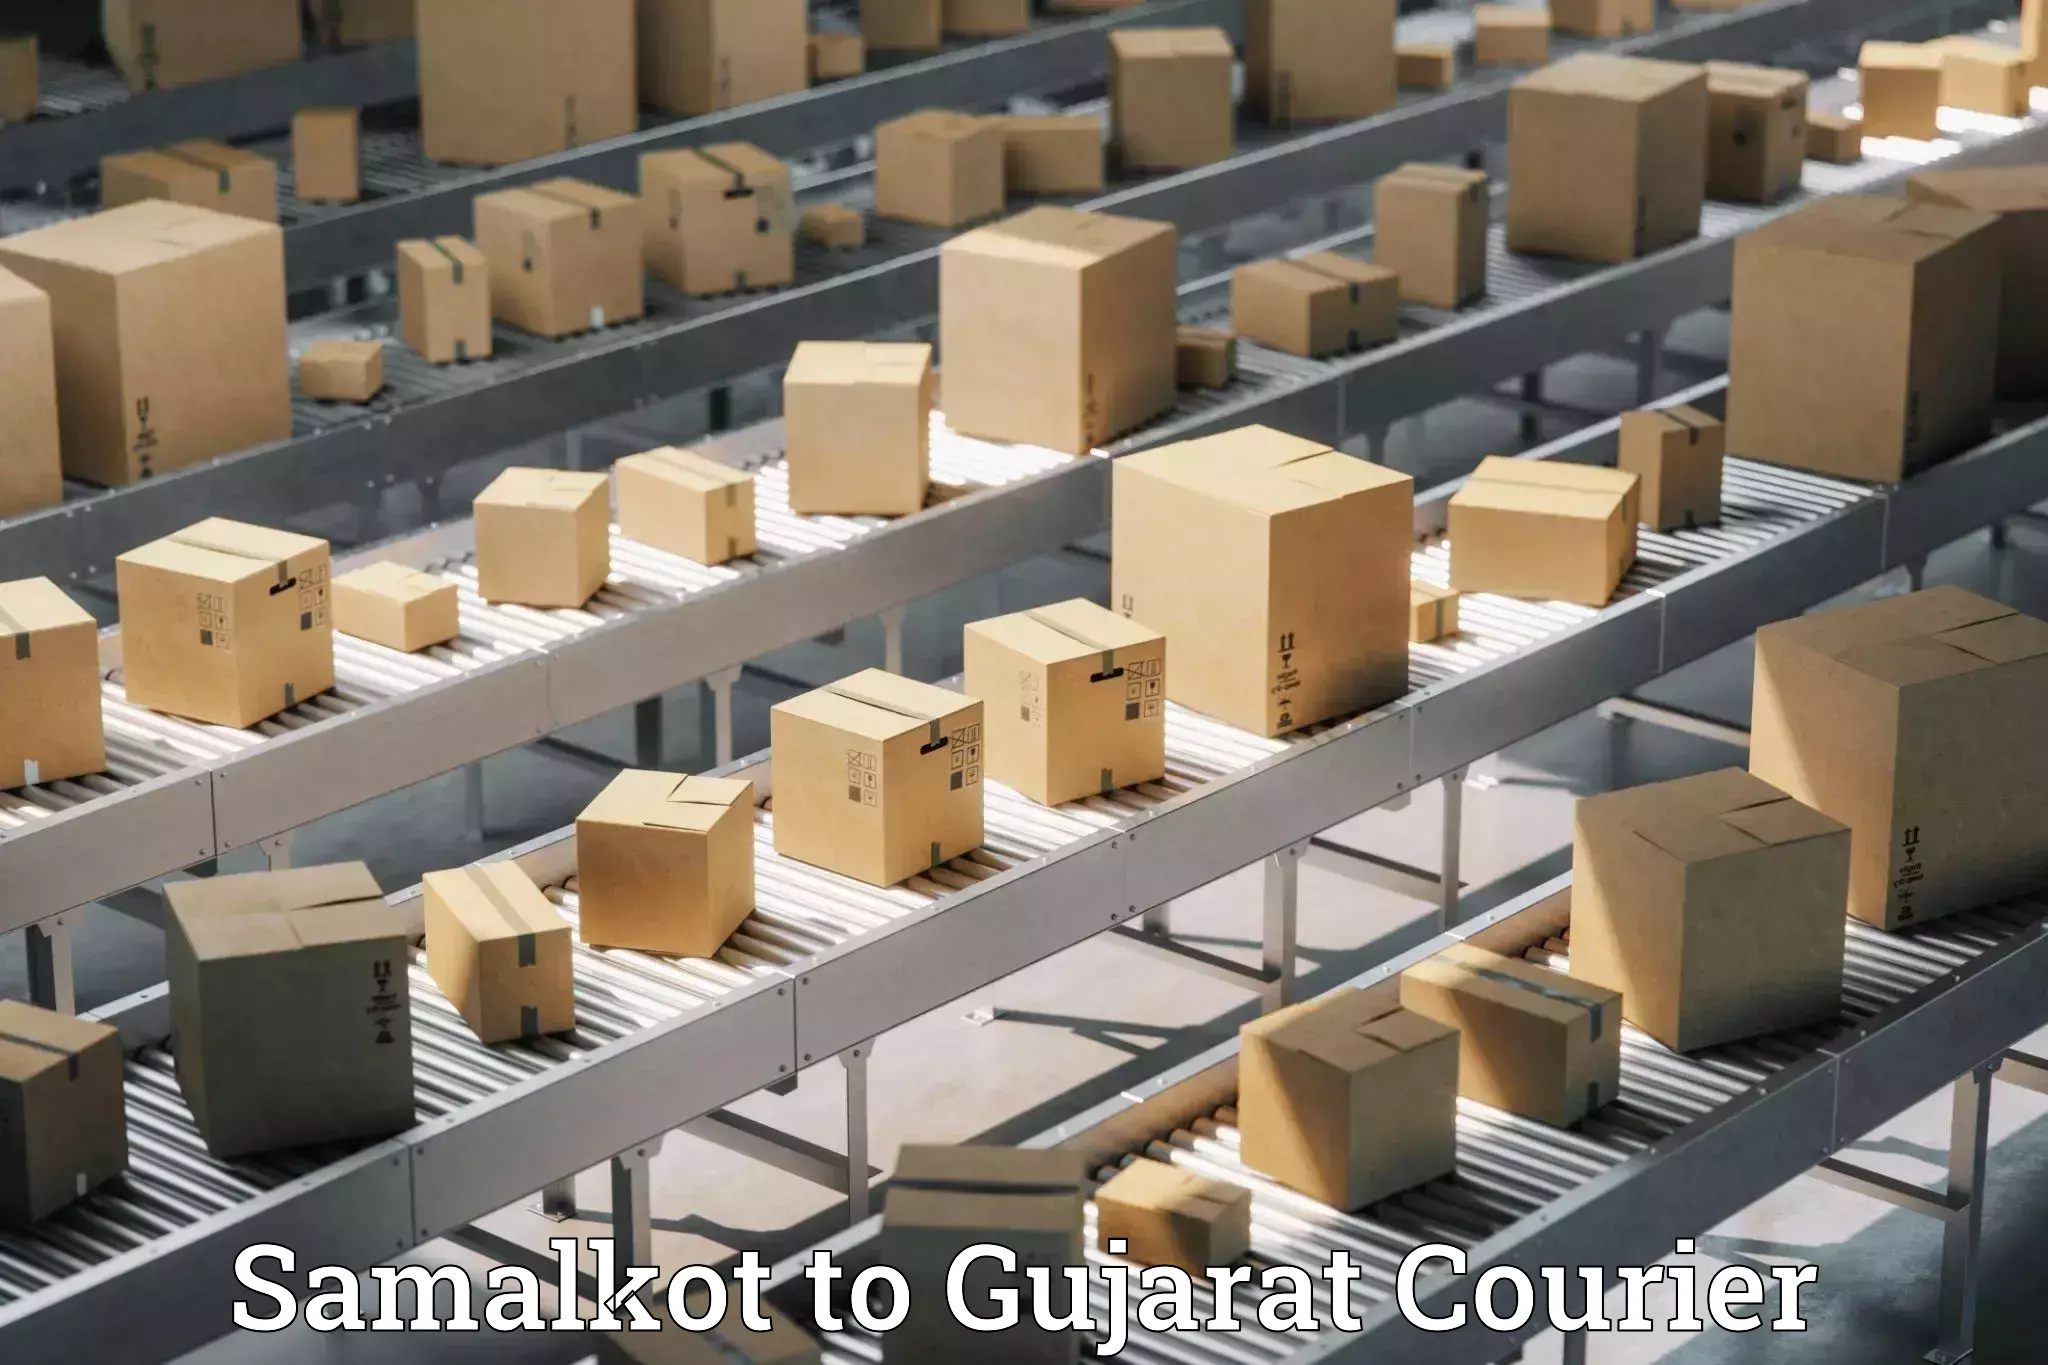 Baggage transport scheduler Samalkot to Gujarat